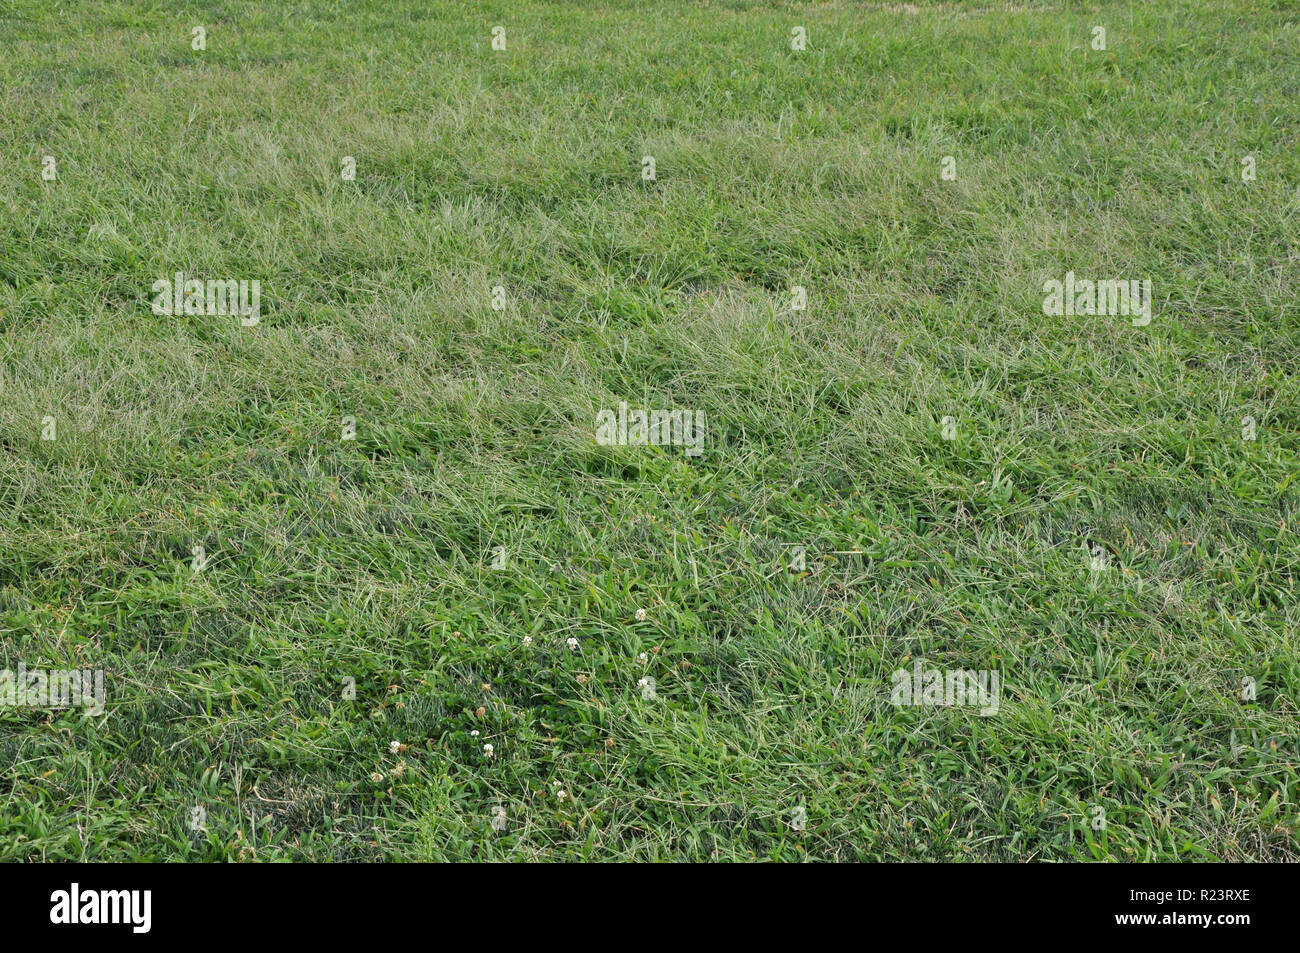 Arrière-plan horizontal de l'herbe verte avec plusieurs petites fleurs blanches. Banque D'Images